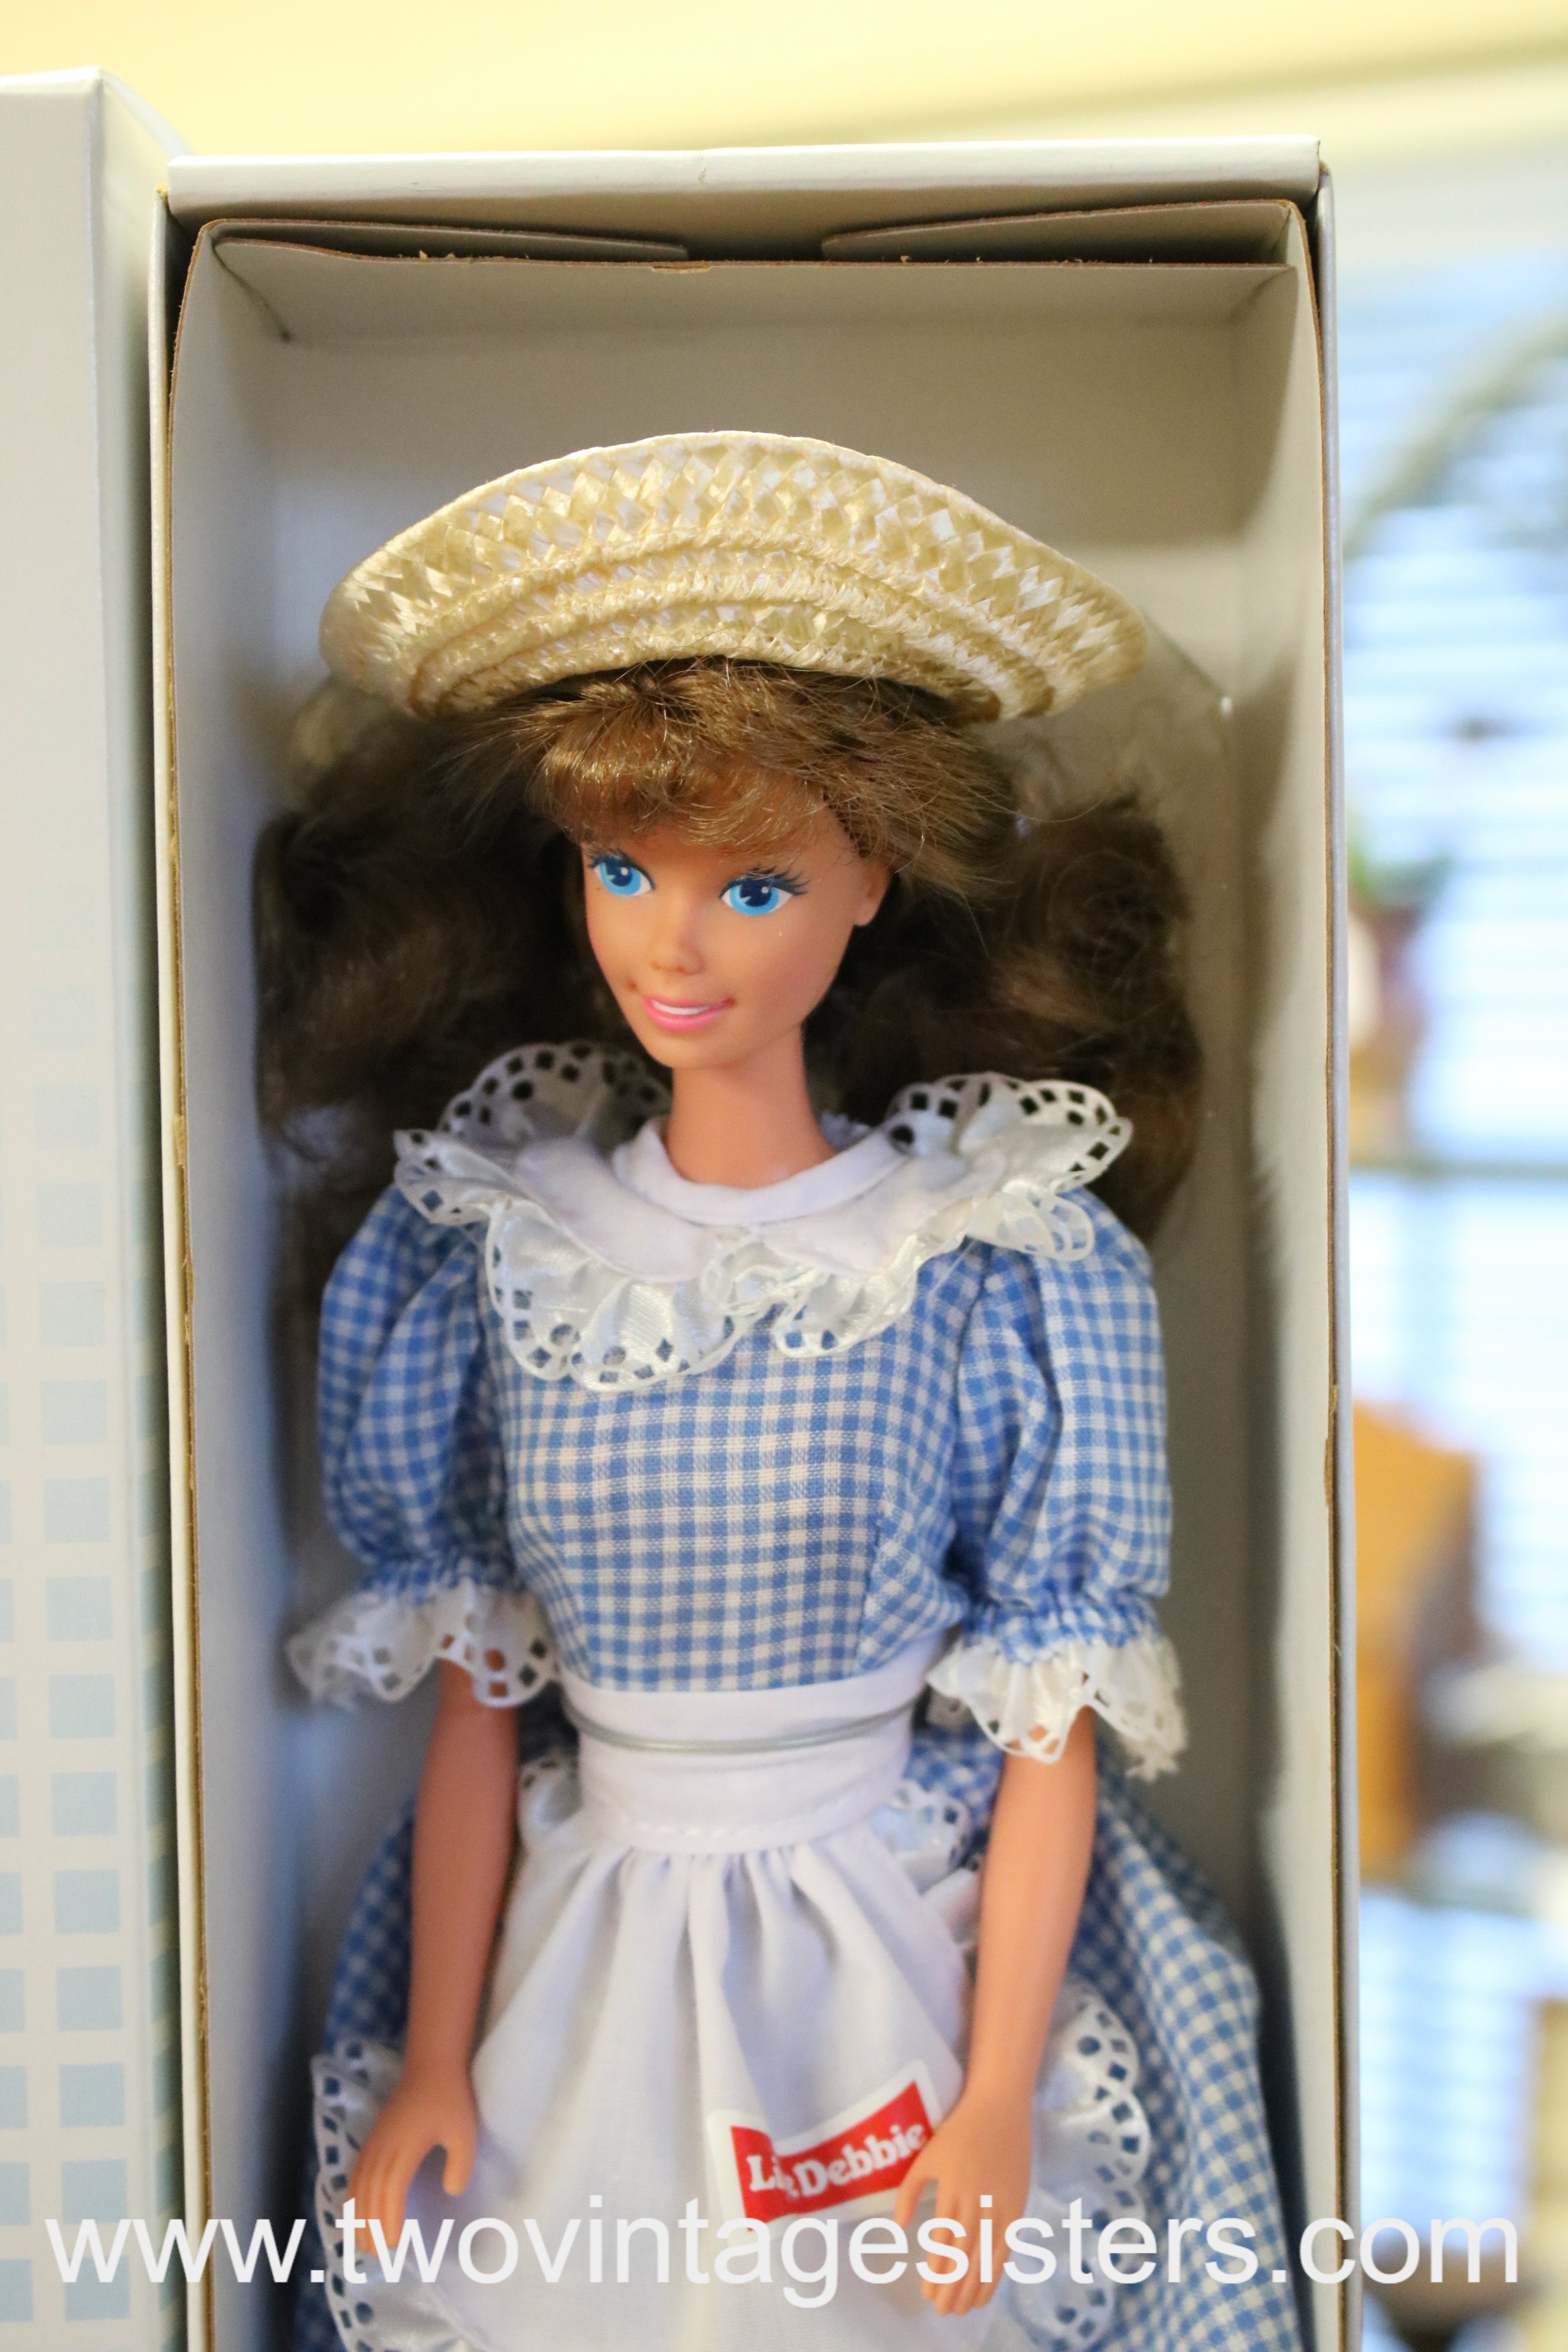 Barbie Little Debbie Collectors Edition